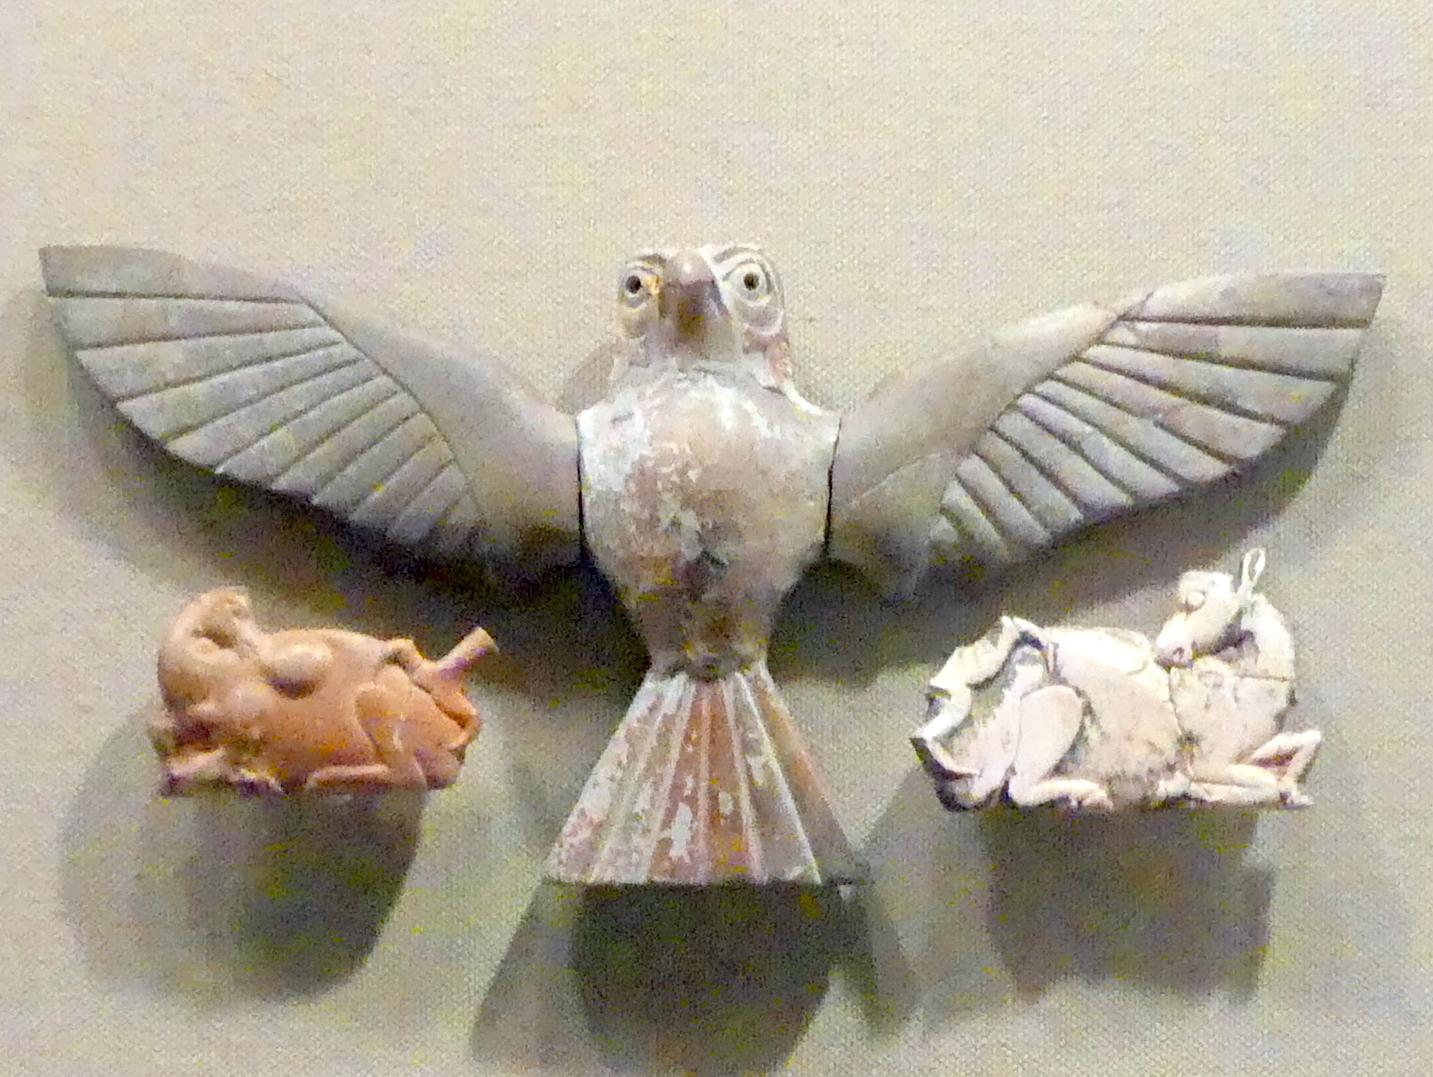 Möbelplaketten: Falke mit einem Hirsch in den Krallen, Assyrisches Reich, 1920 - 1600 v. Chr., 1820 - 1740 v. Chr., Bild 1/2